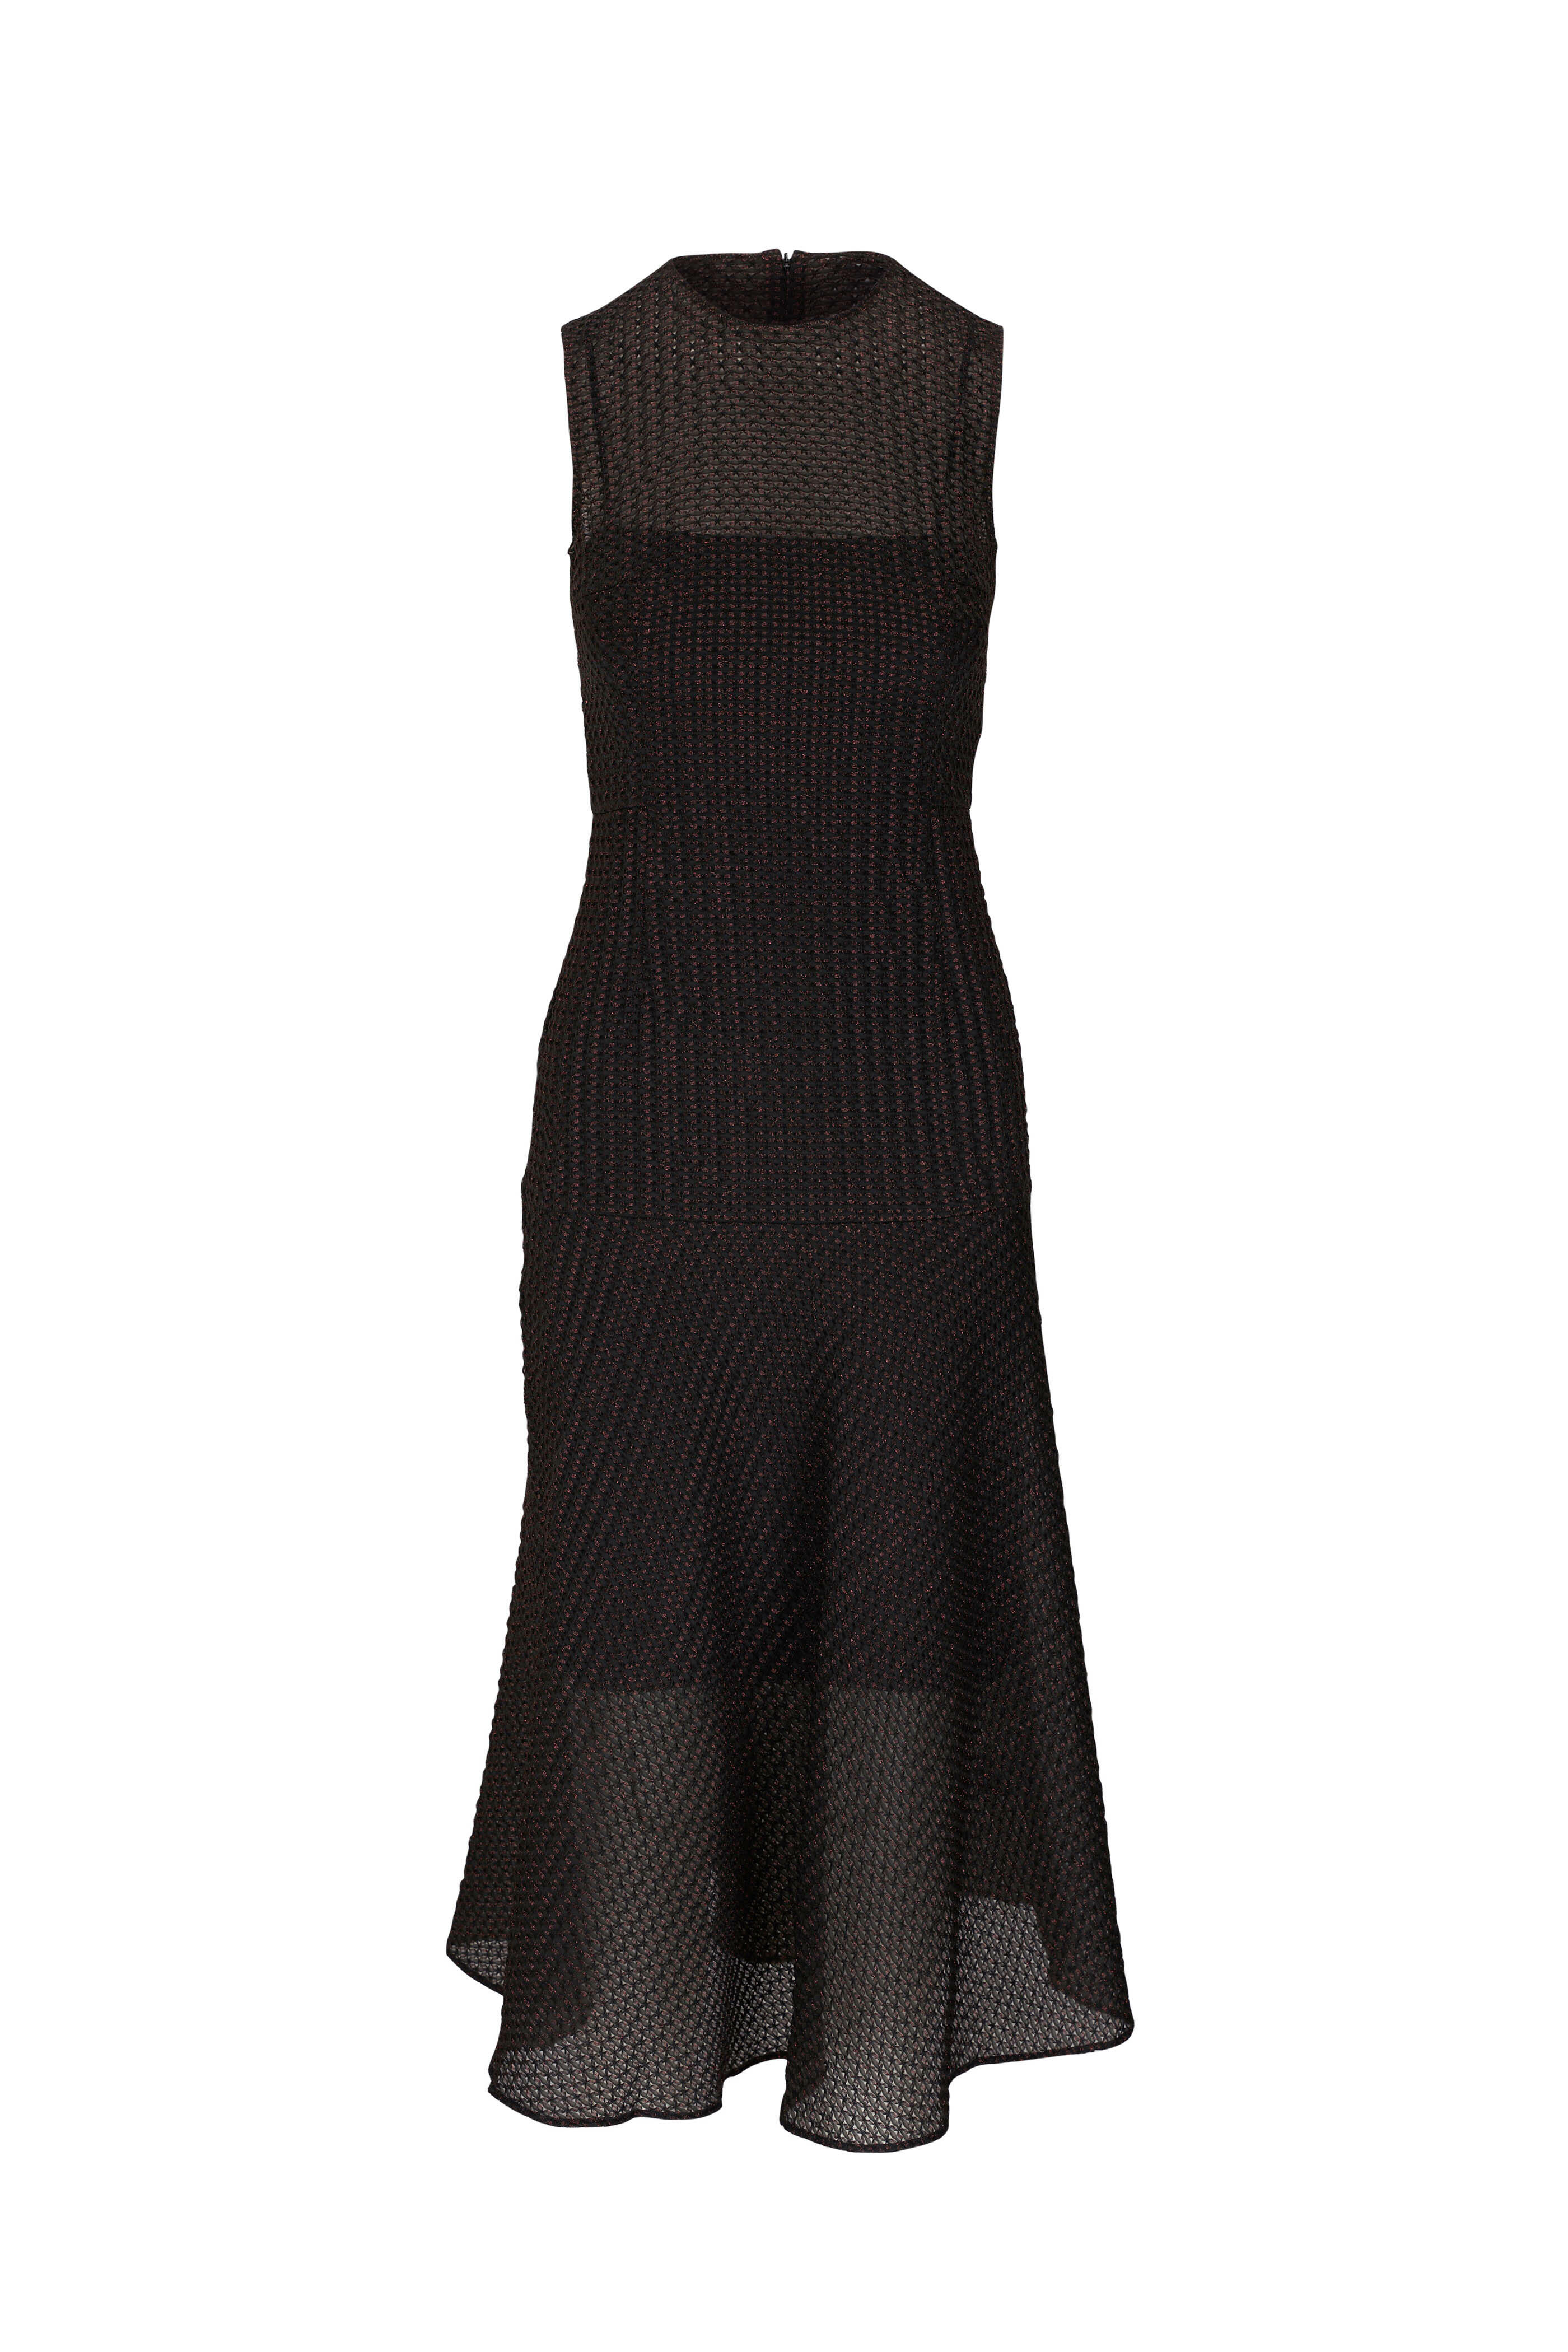 Akris Punto - Metallic 3D Black & Bronze Dress